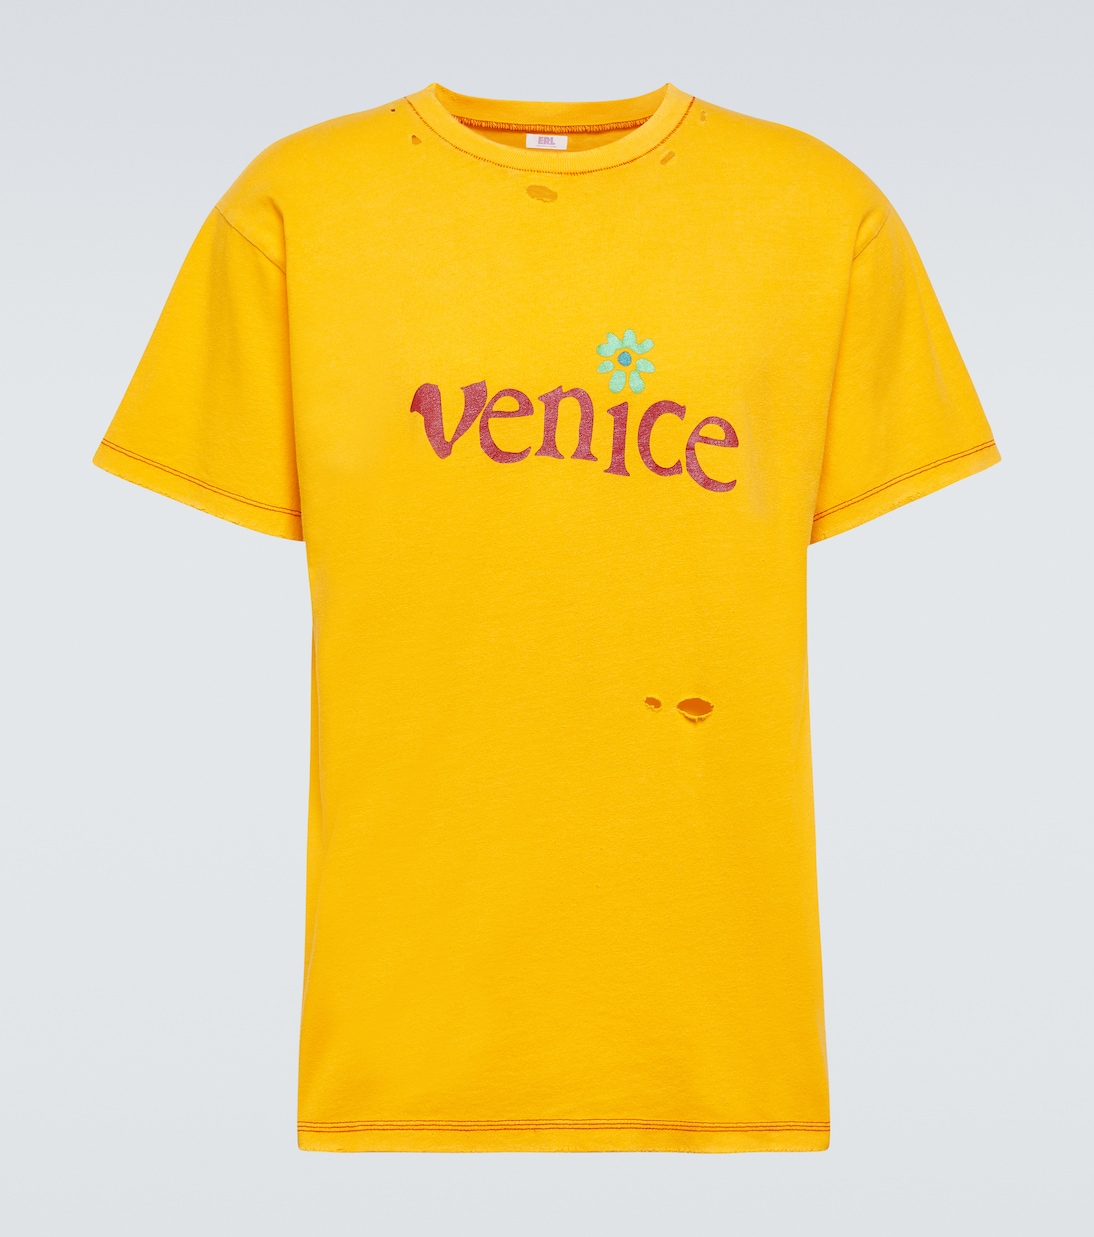 Футболка «венеция» из хлопка и льна Erl, желтый